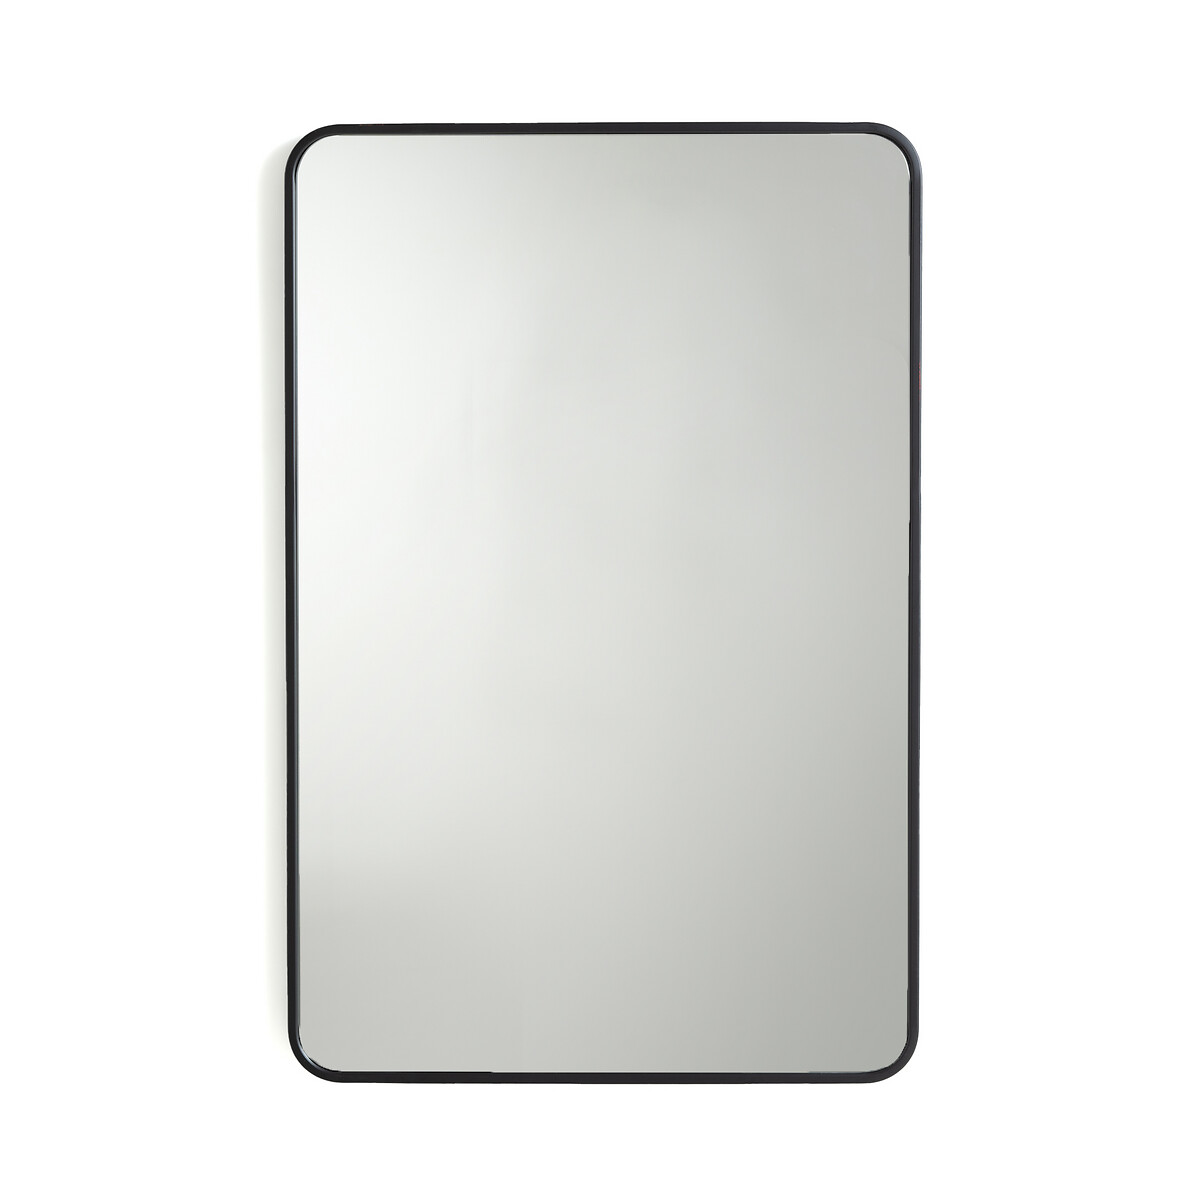 Зеркало с отделкой металлом В90 см Iodus единый размер черный зеркало с отделкой ротангом 120 x 73 см rivia единый размер бежевый